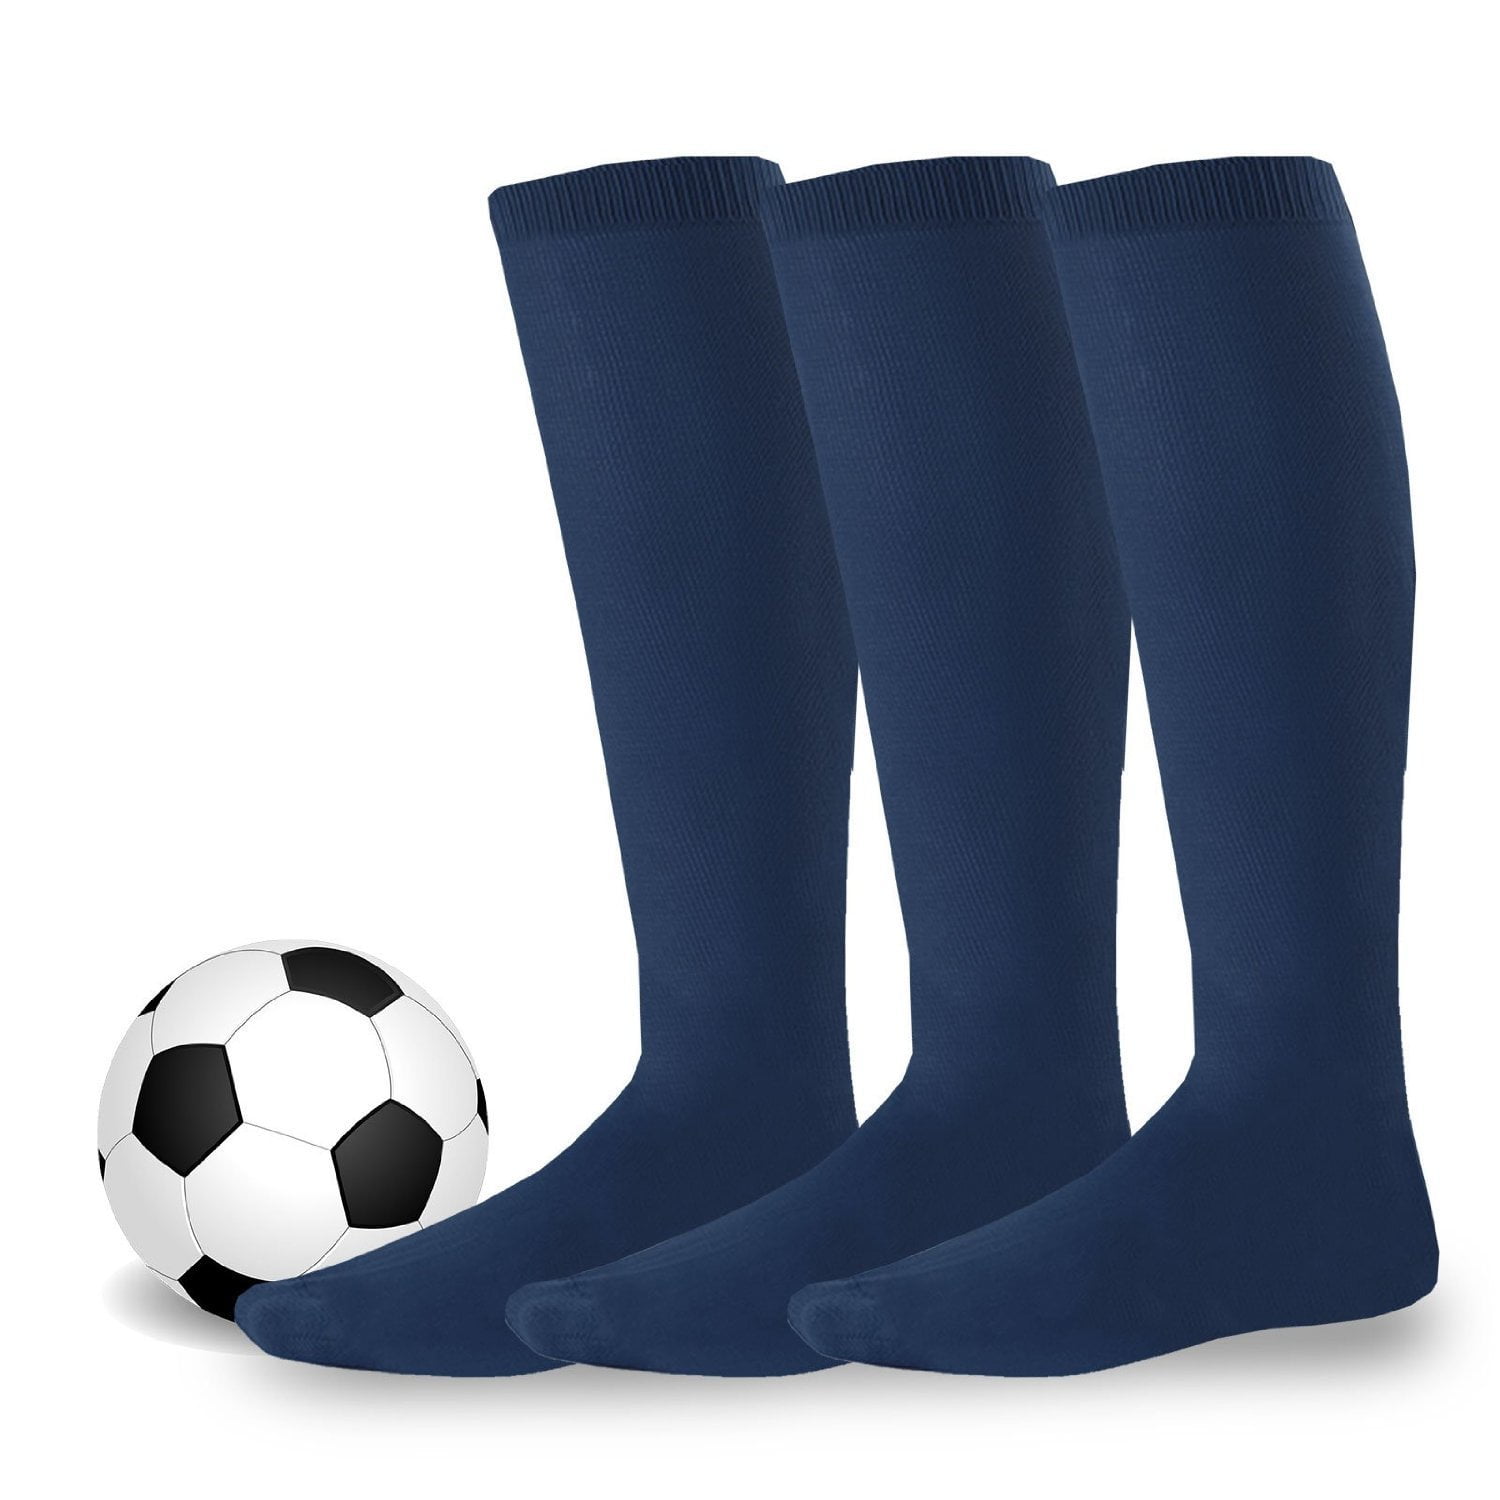 UMBRO Best Soccer Socks Dark Navy & White Sock Choose 4-6 7-9 or 10-13 NEW 